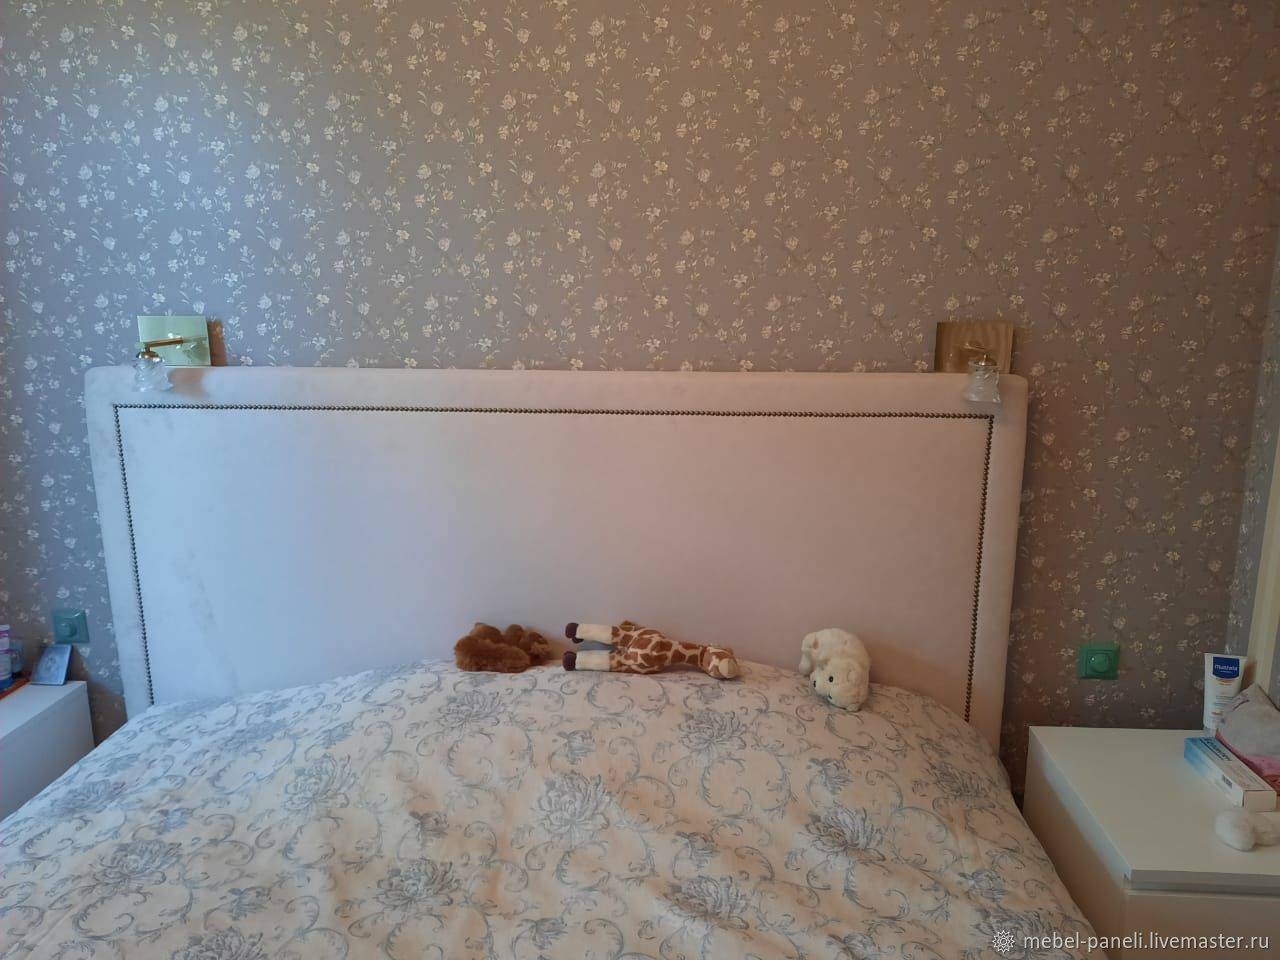 [инструкция] двухъярусная кровать своими руками | 80+ фото